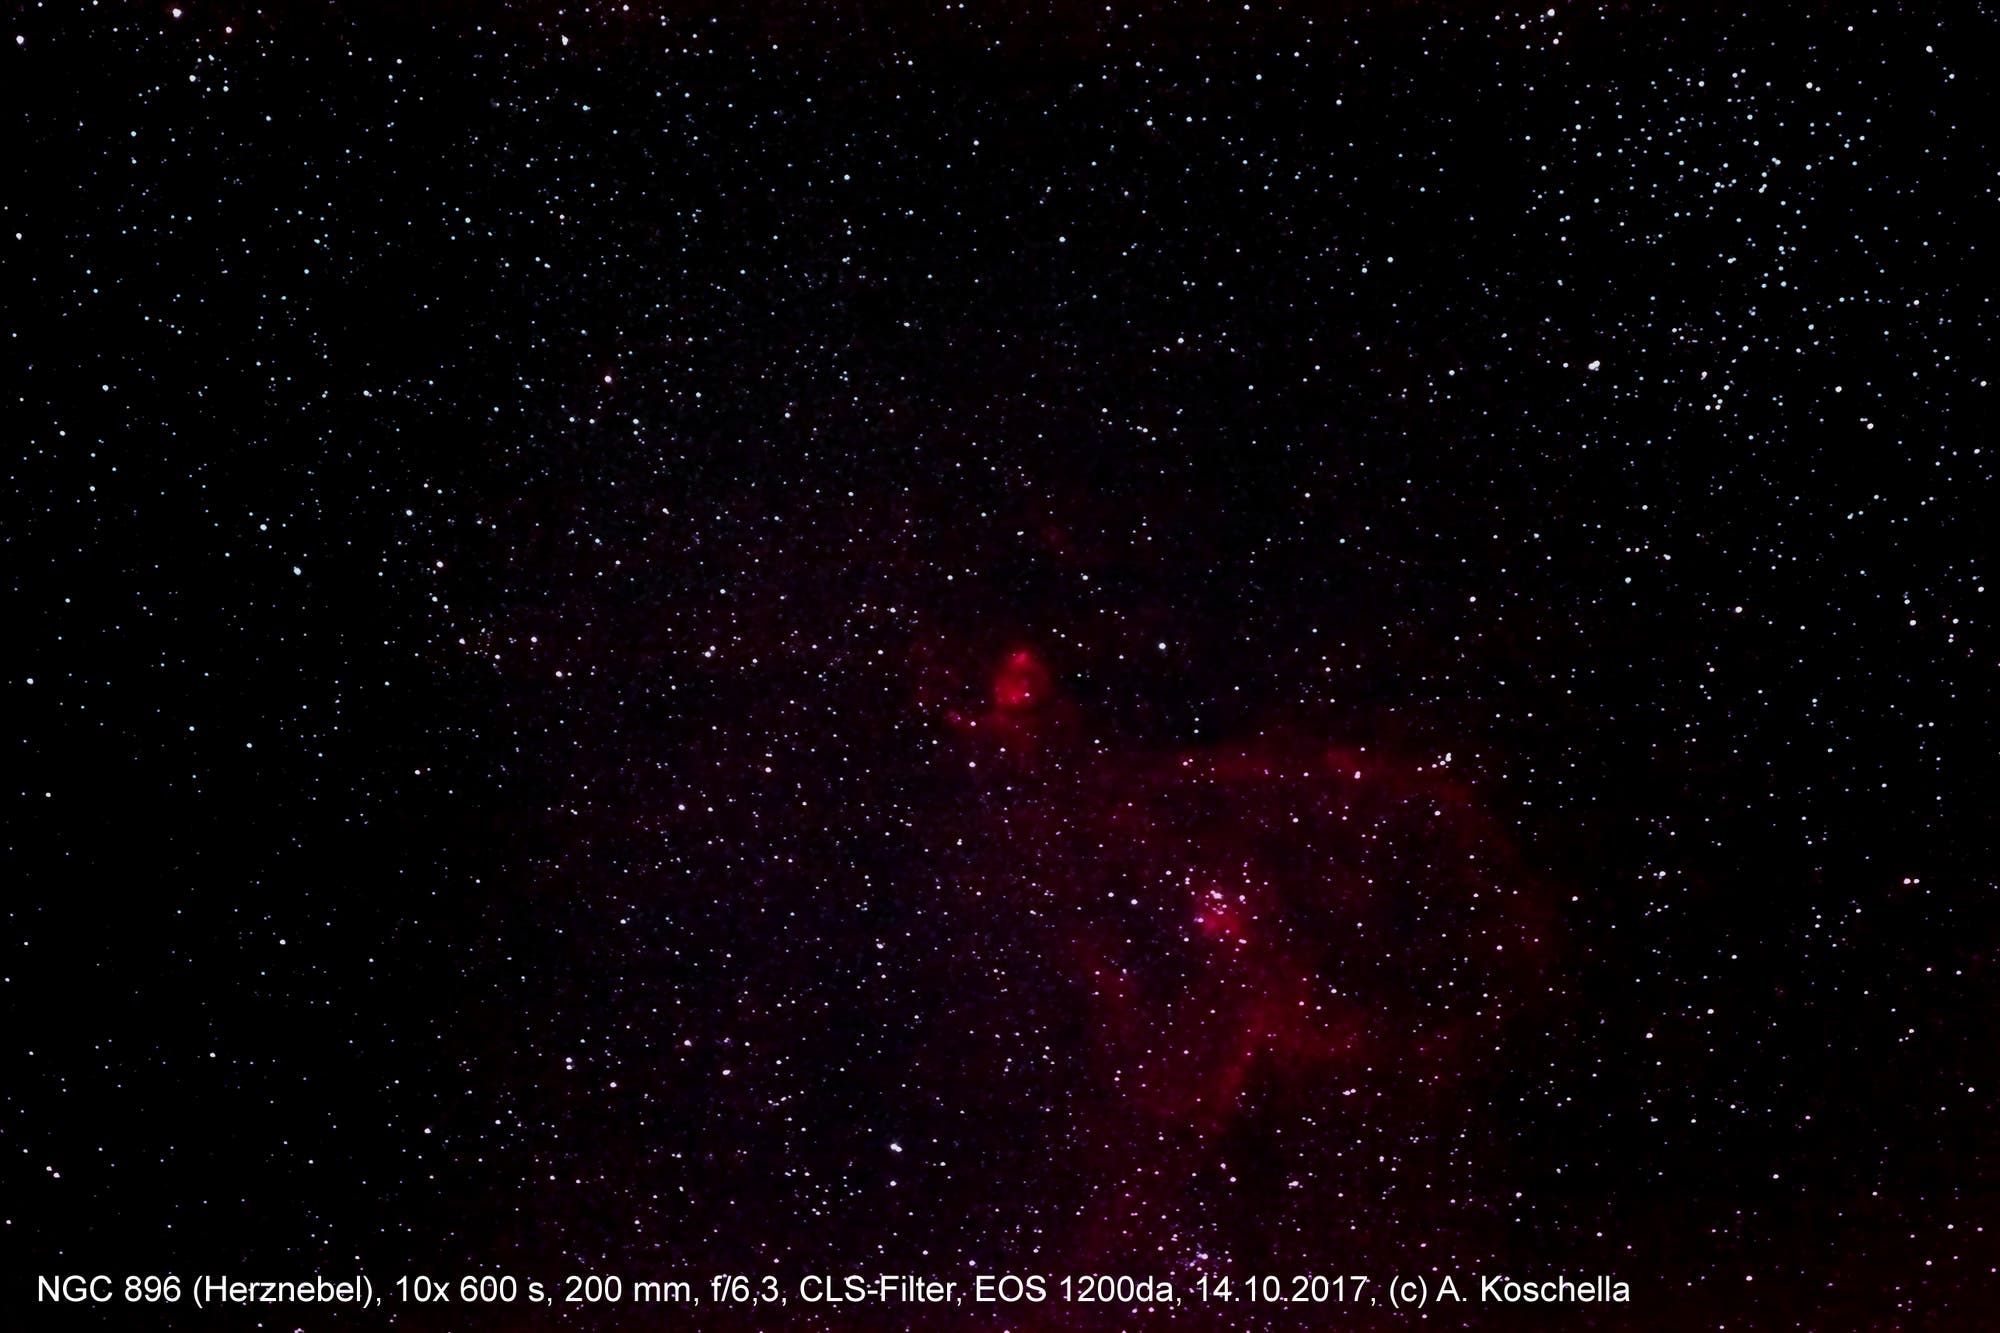 Herznebel (NGC 896)